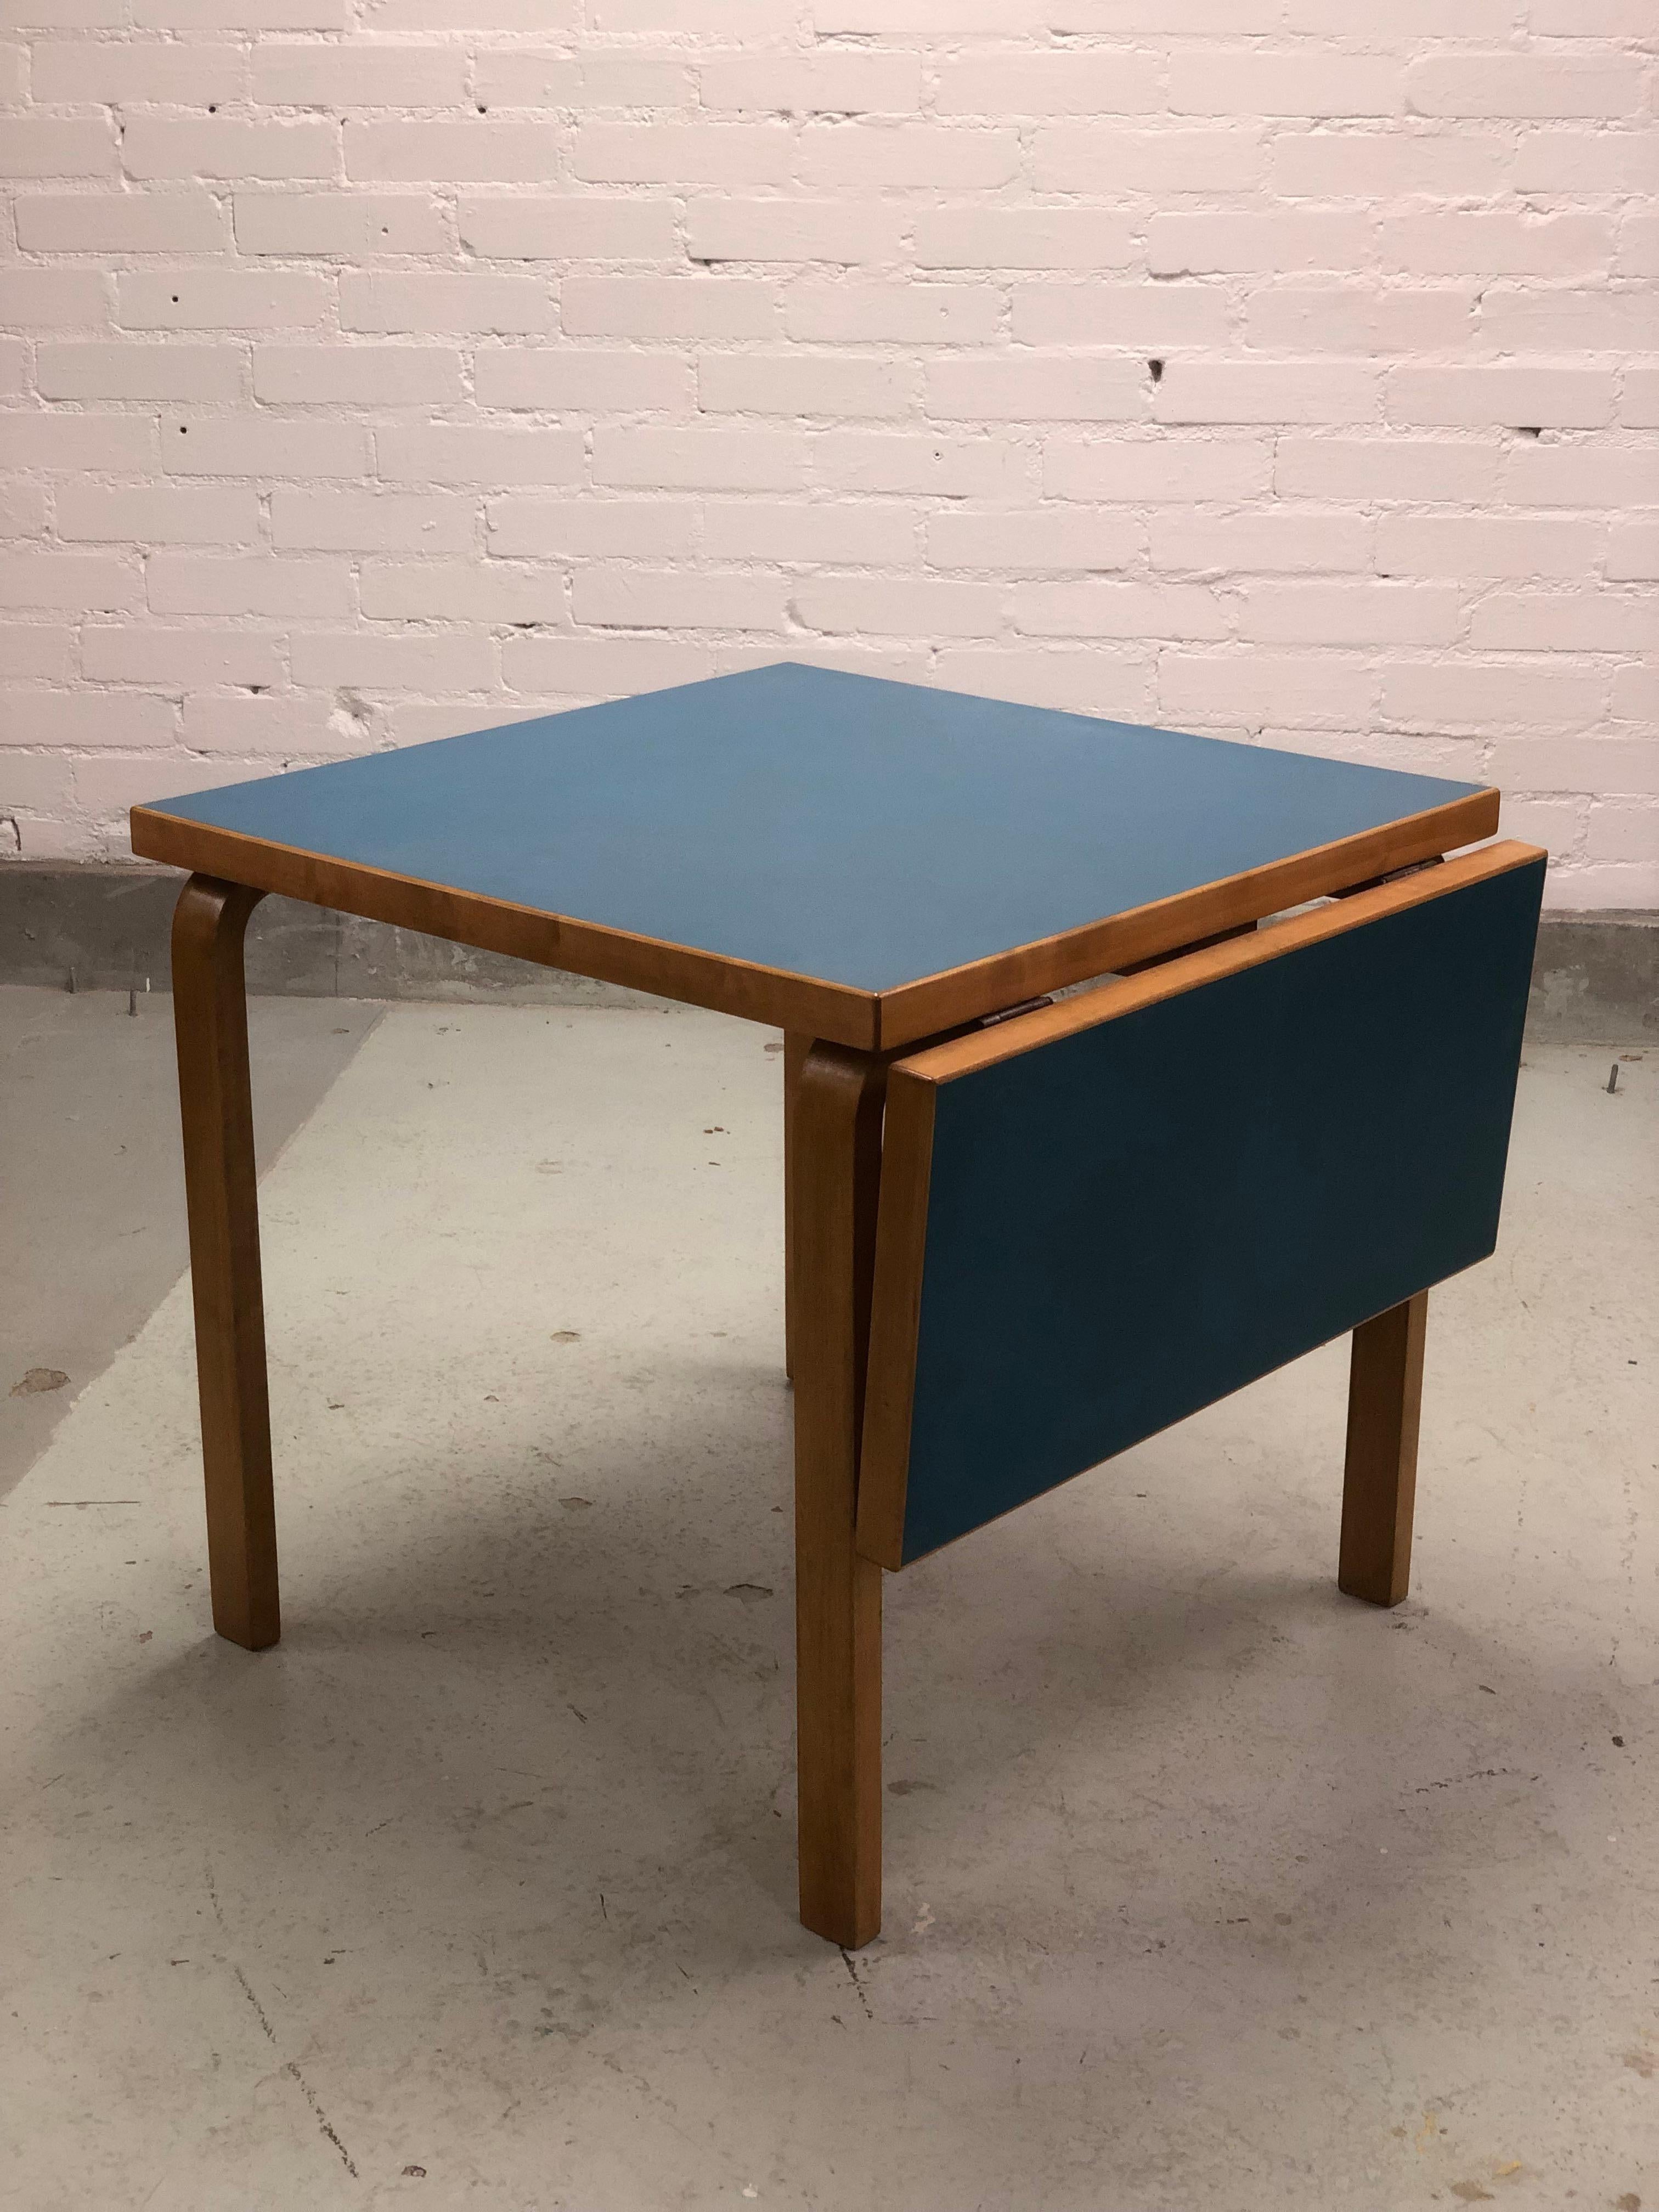 Table pliante d'Alvar Aalto en bouleau avec une belle surface en linoléum bleu, conçue par Alvar Aalto et fabriquée par Artek dans les années 1950. Les matériaux utilisés par Artek étaient très duables et ont duré des années et des années en bon